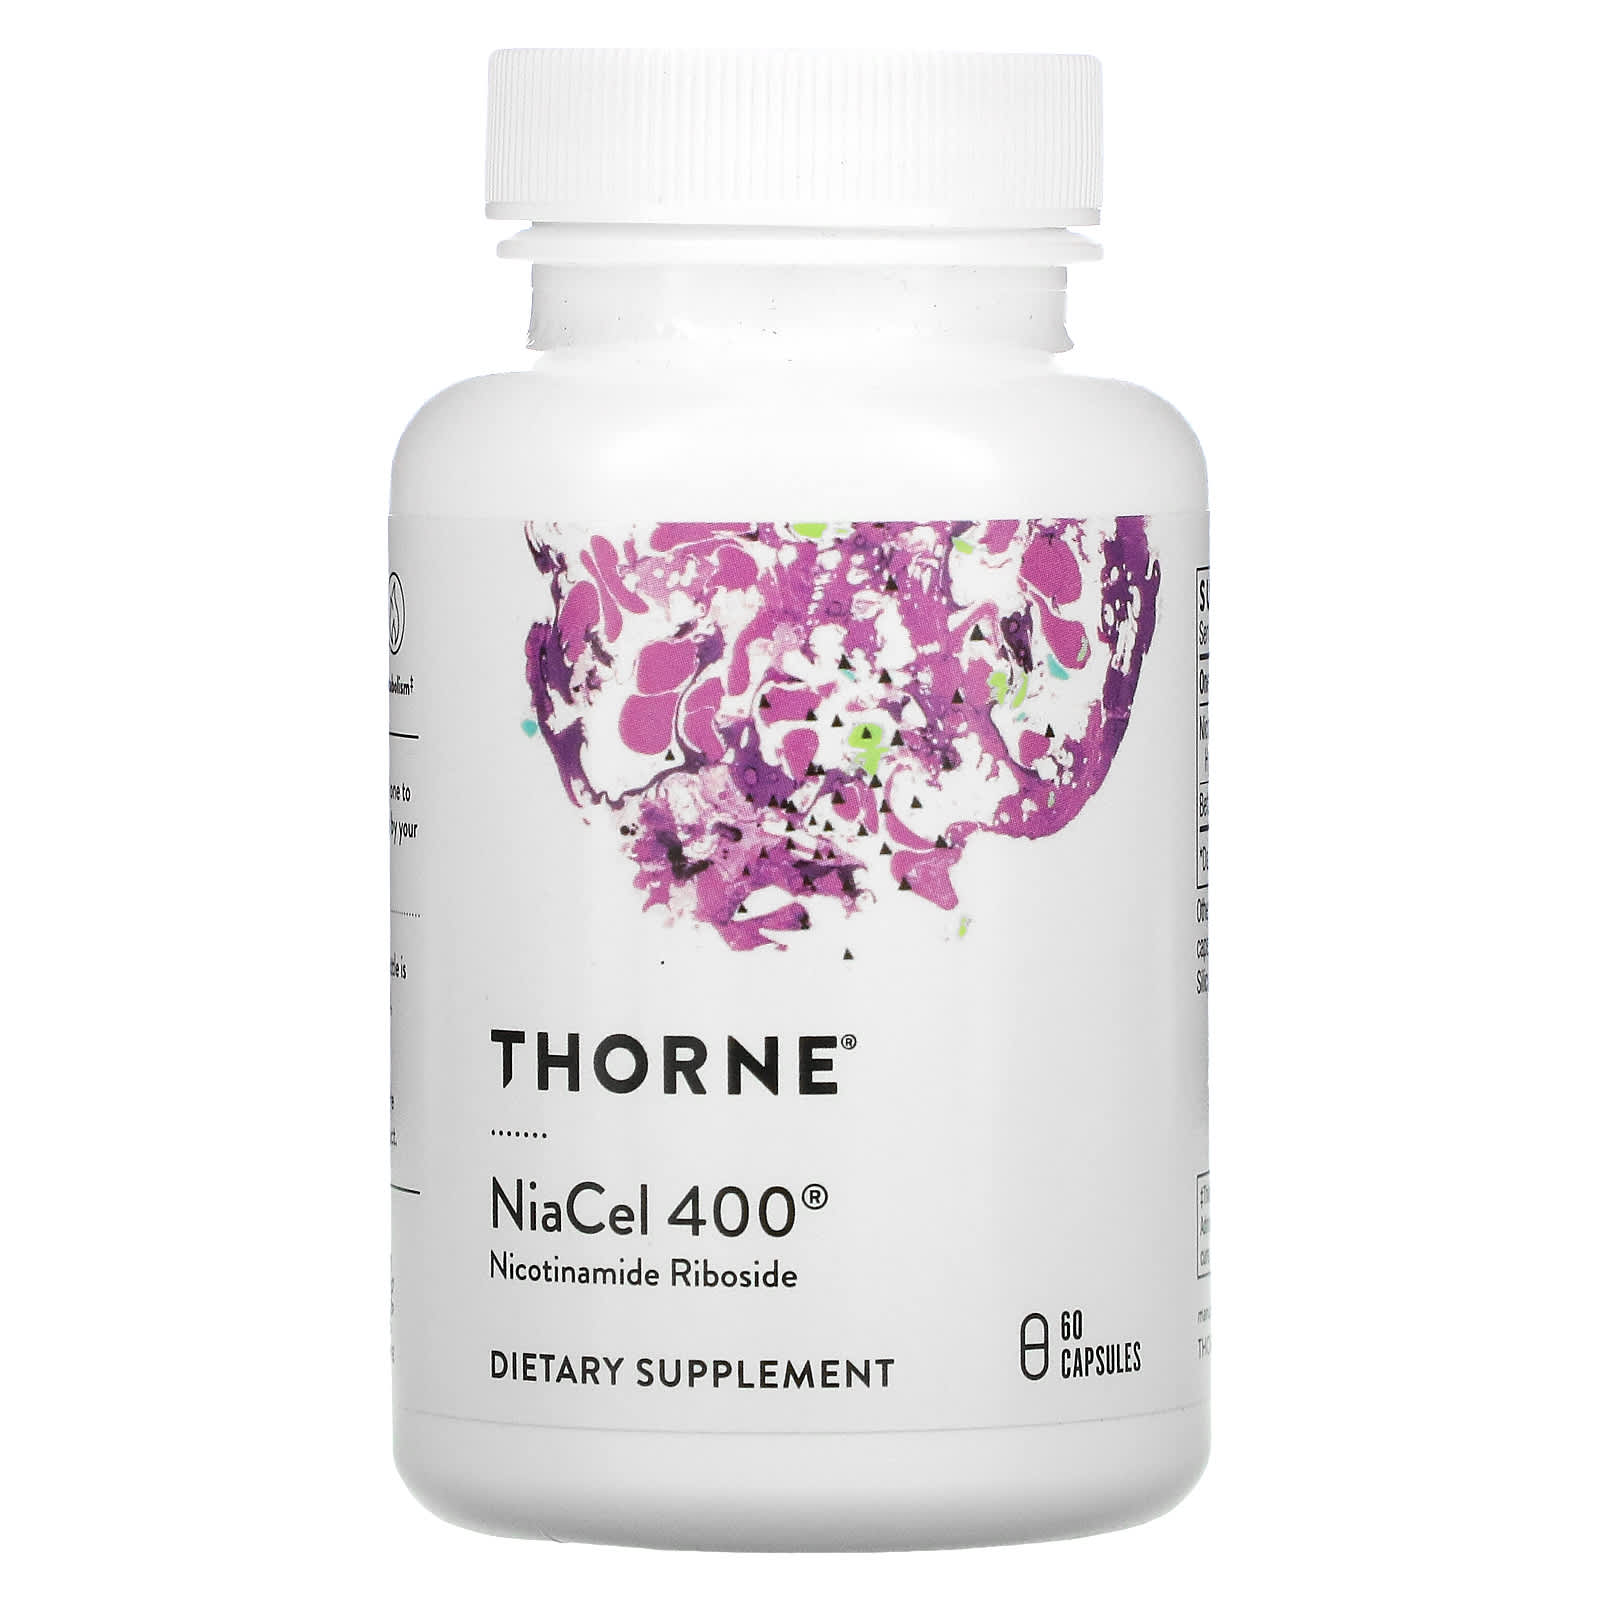 Пищевая Добавка Thorne NiaCel 400, 60 капсул пищевая добавка thorne dim advantage 60 капсул